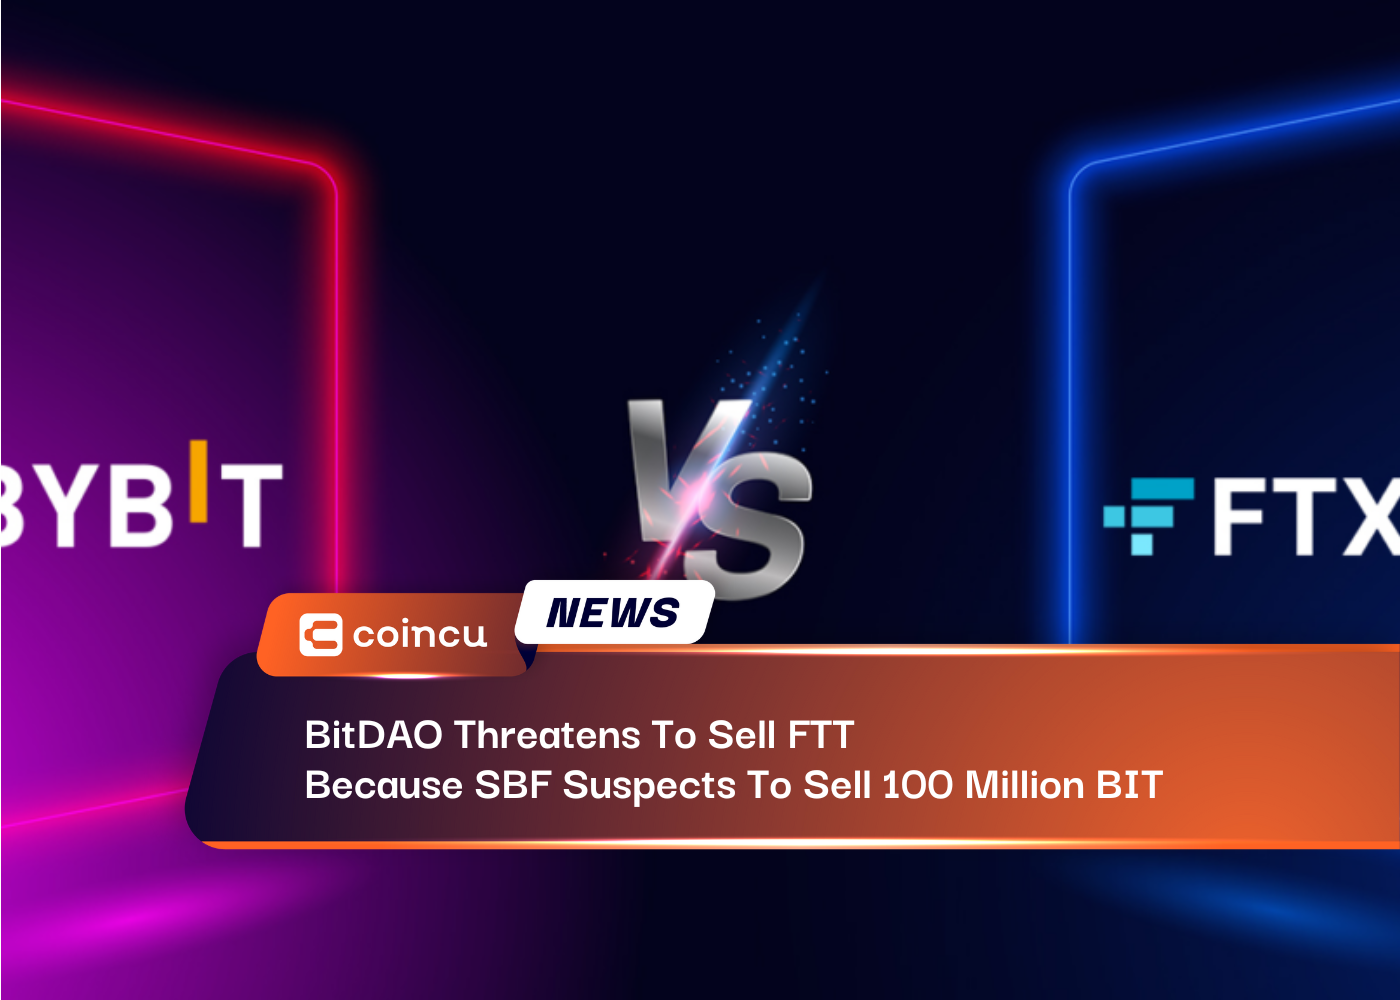 SBFが100億BITを売却する疑いがあるため、BitDAOがFTTを売却すると脅迫